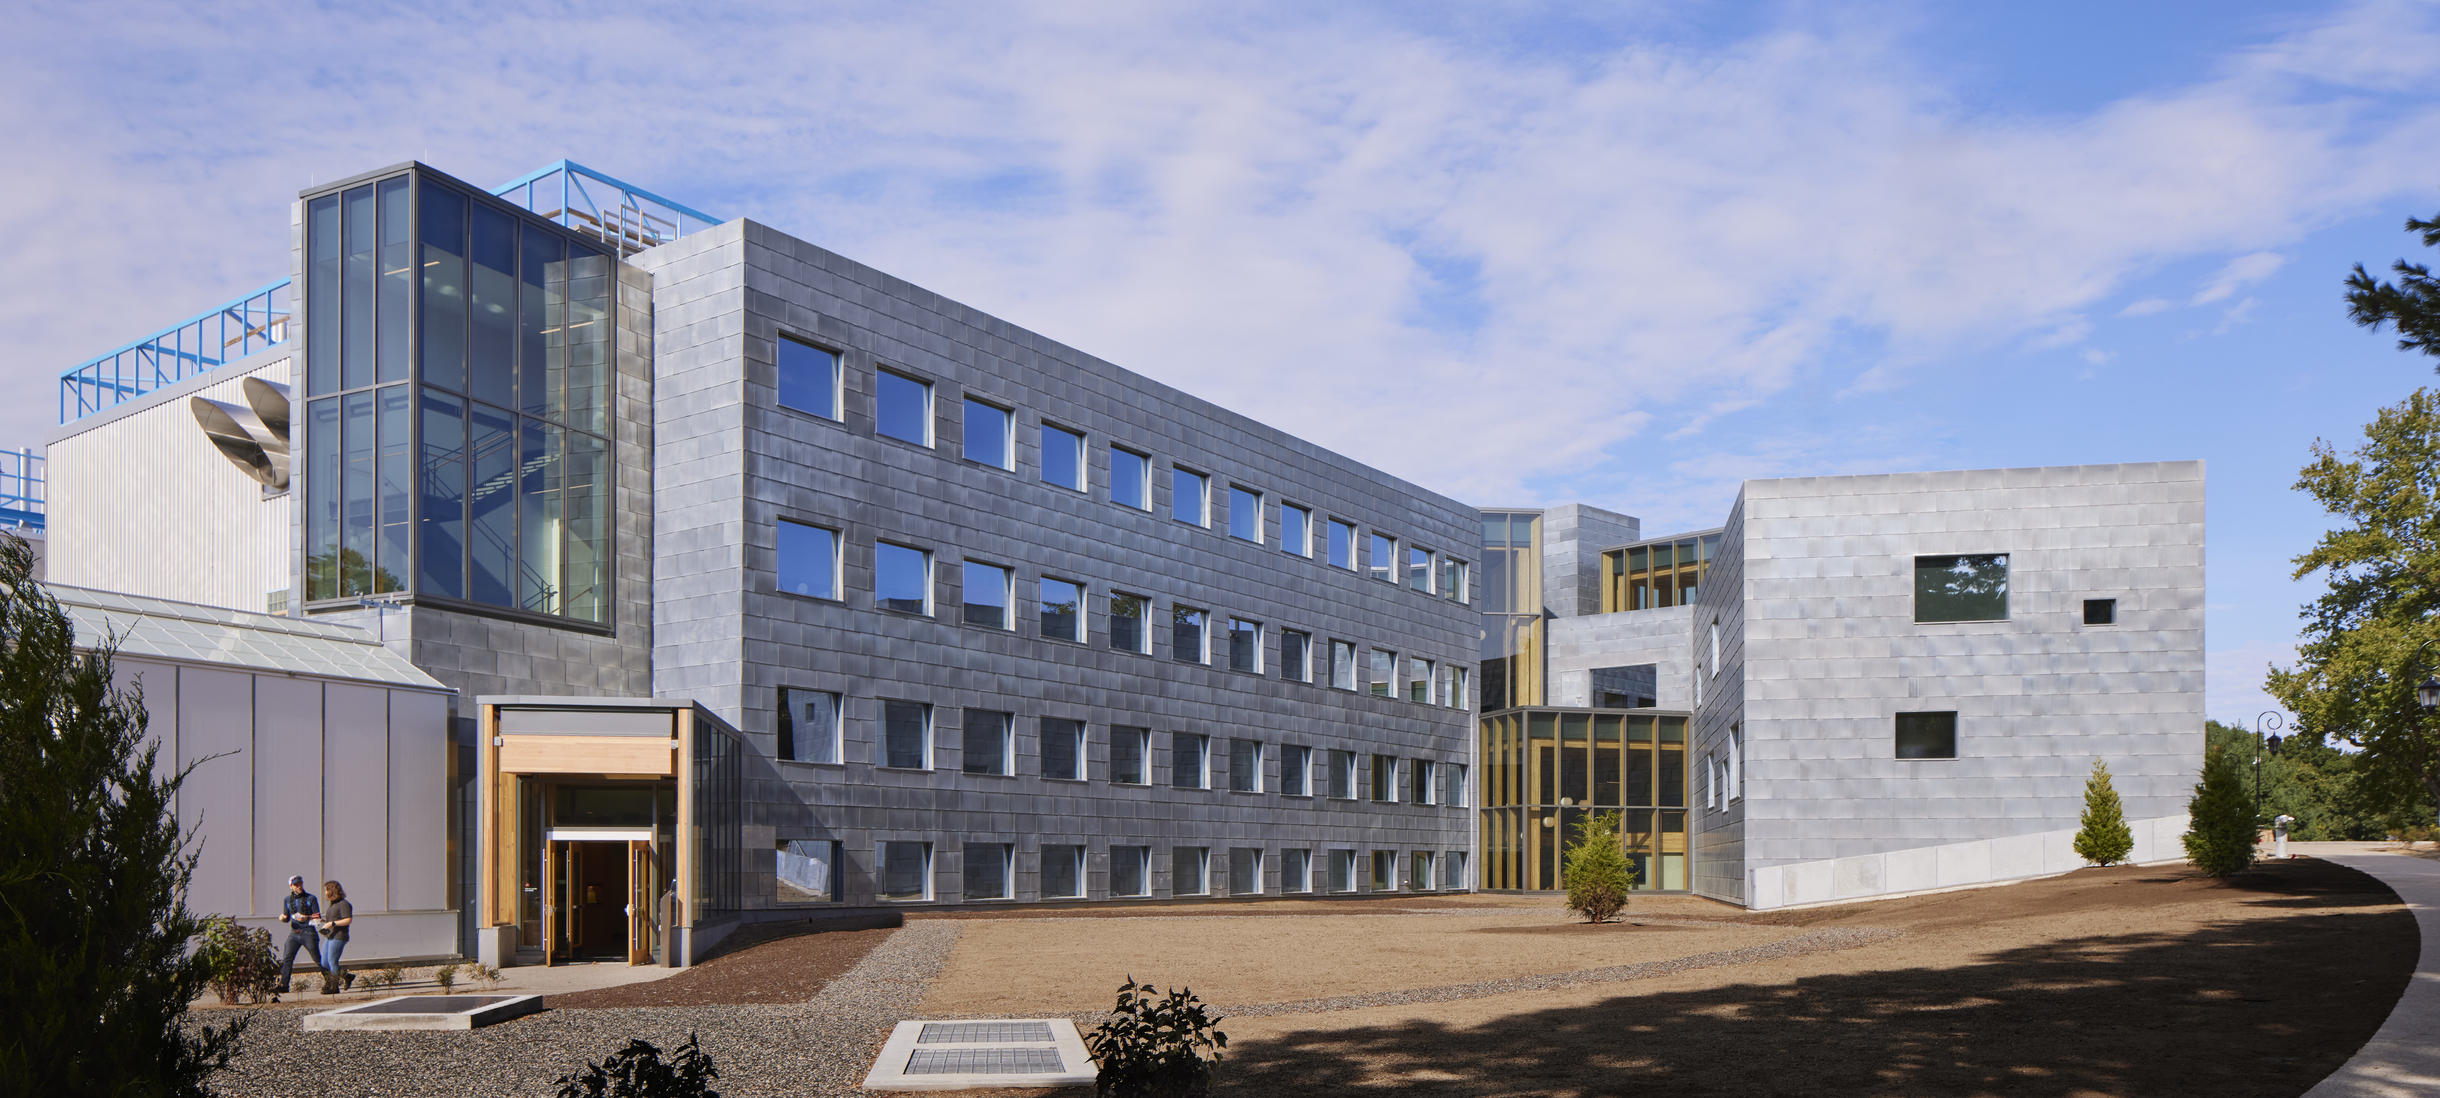 rendering of science building